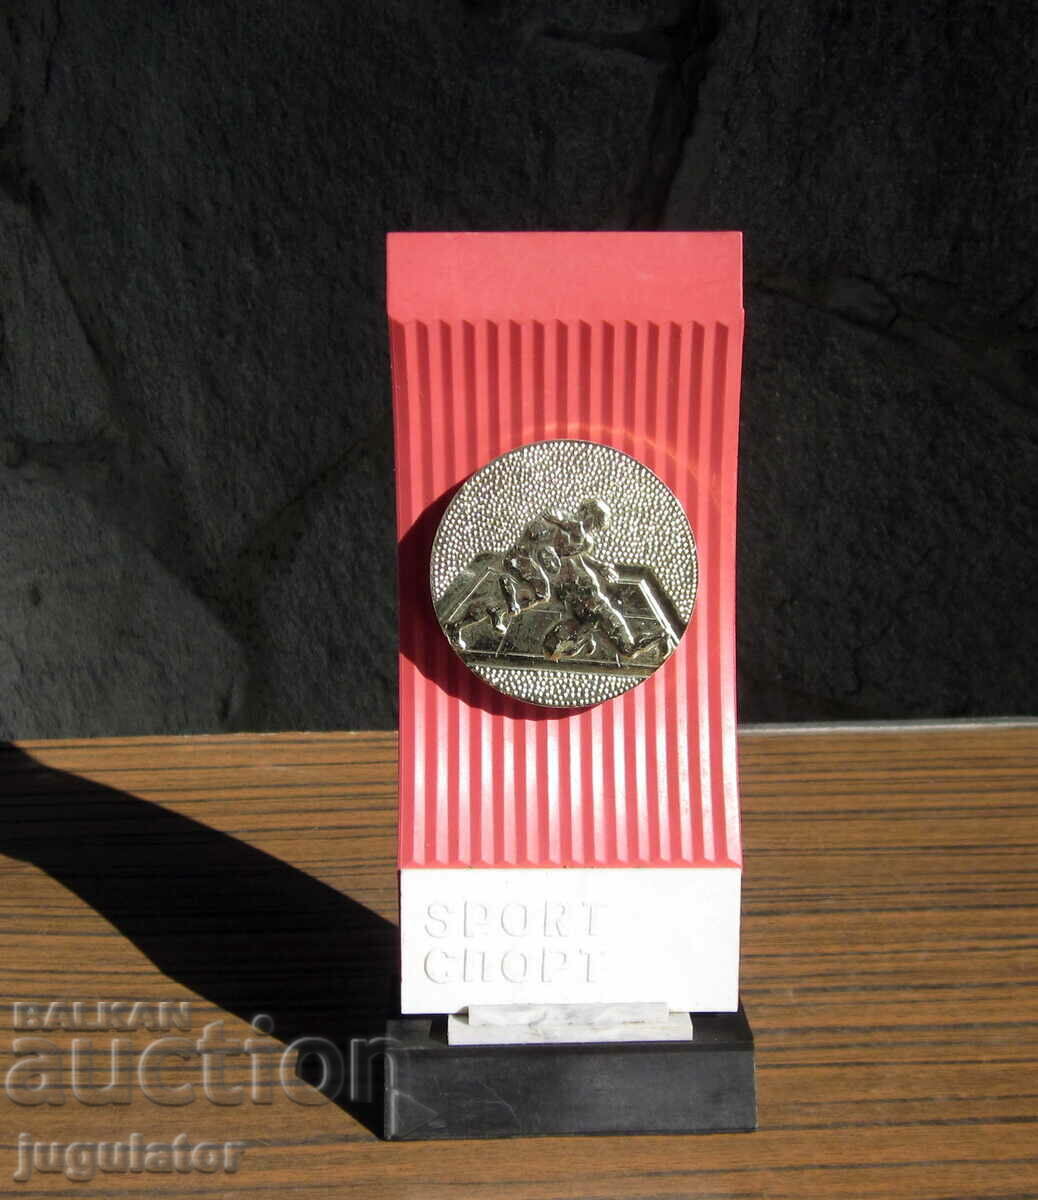 Cupa bulgară cu premii sportive cu medalie la lupte